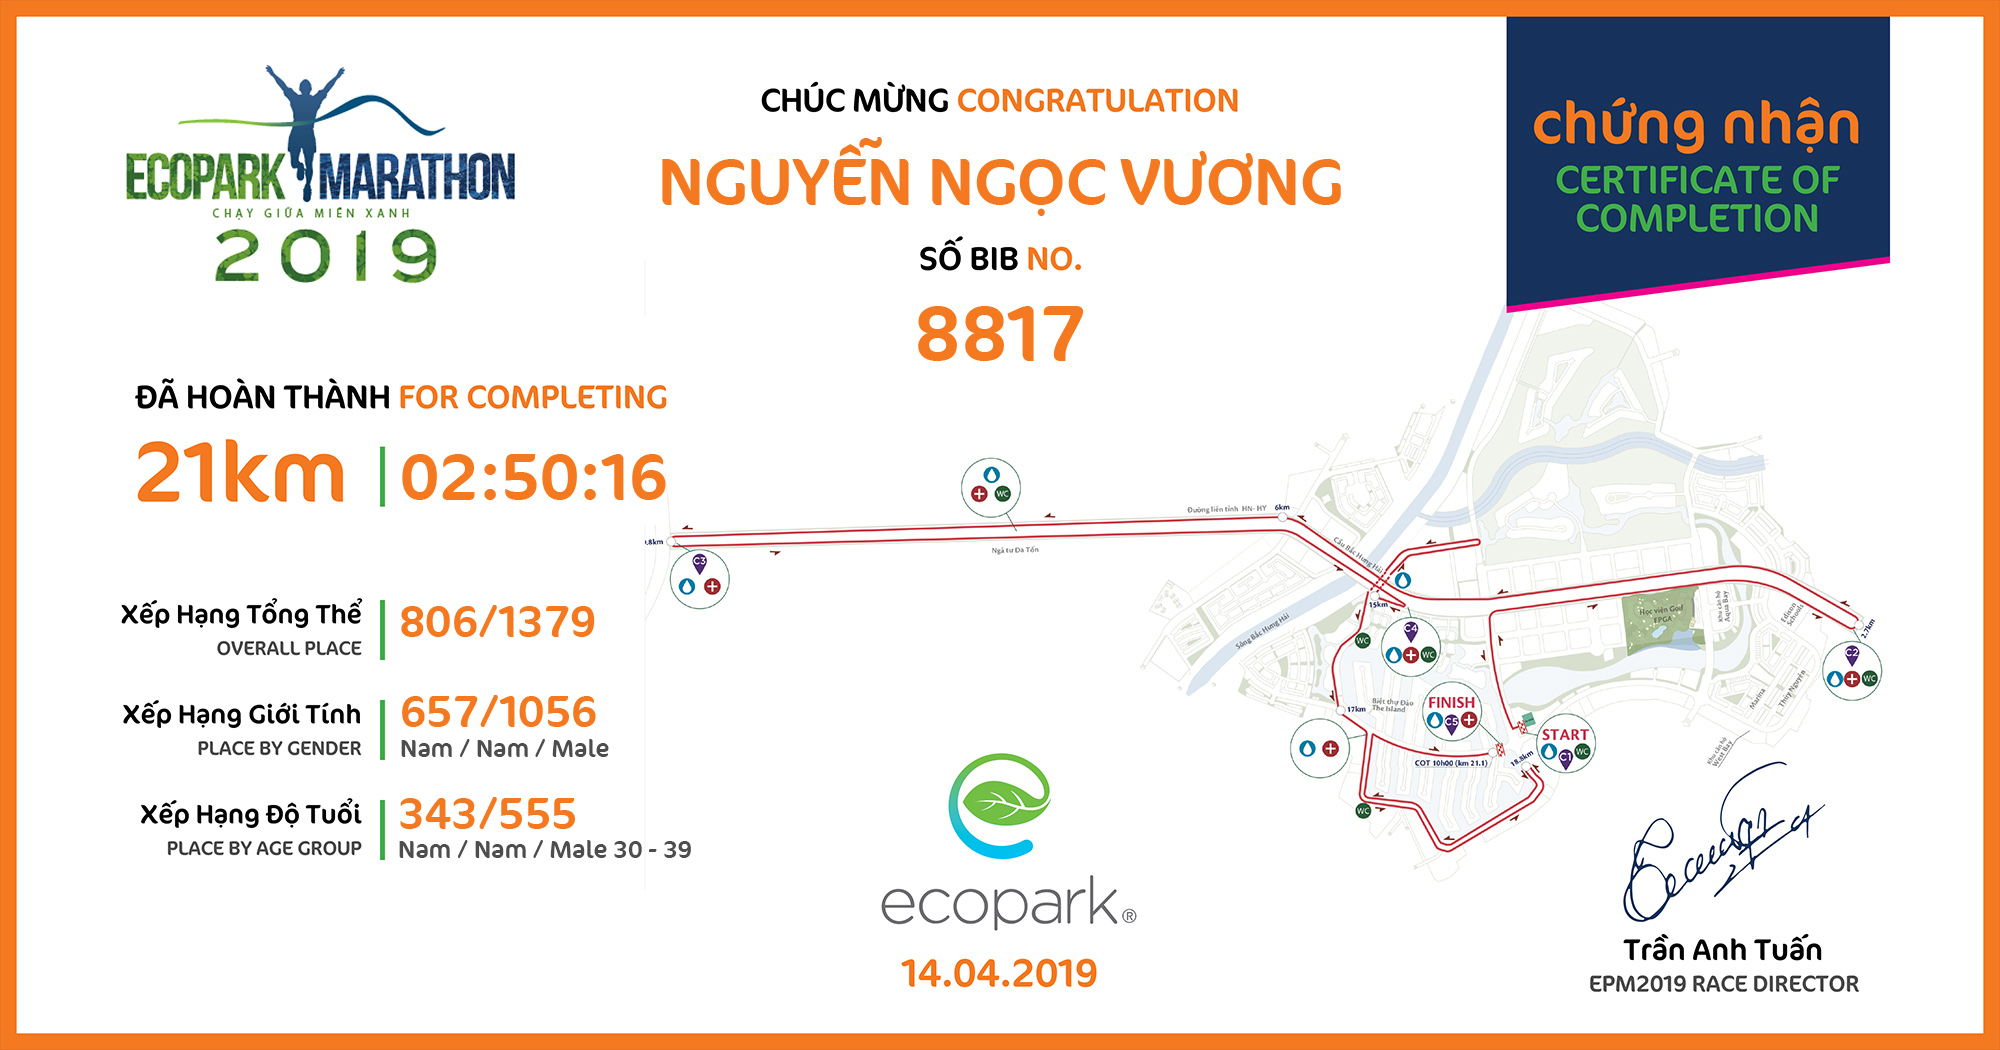 8817 - Nguyễn Ngọc Vương